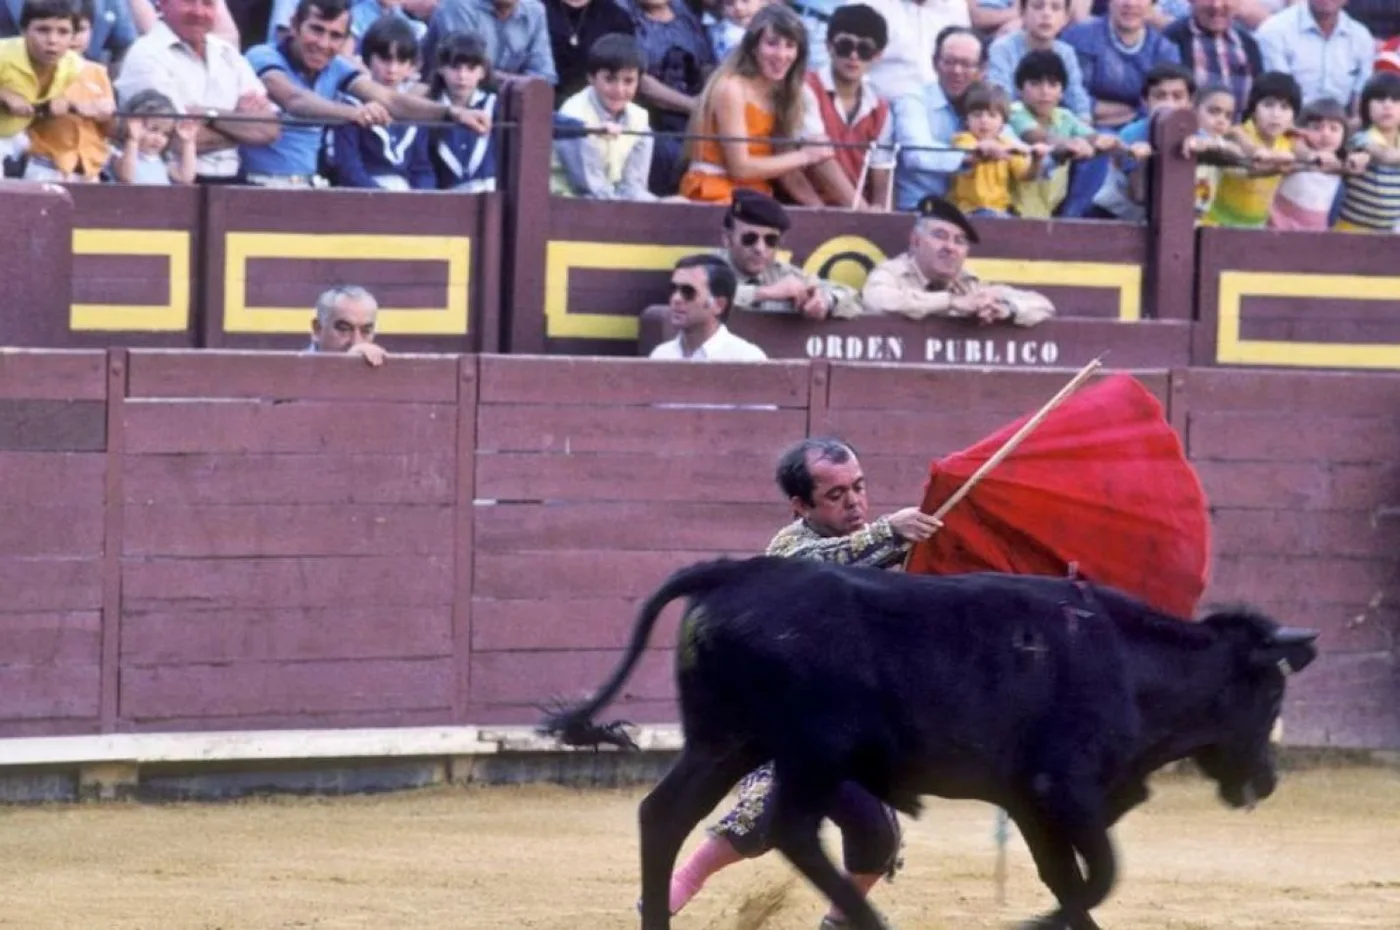 España prohíbe los shows con “enanos toreros” por considerarlos denigrantes para las personas con discapacidad.